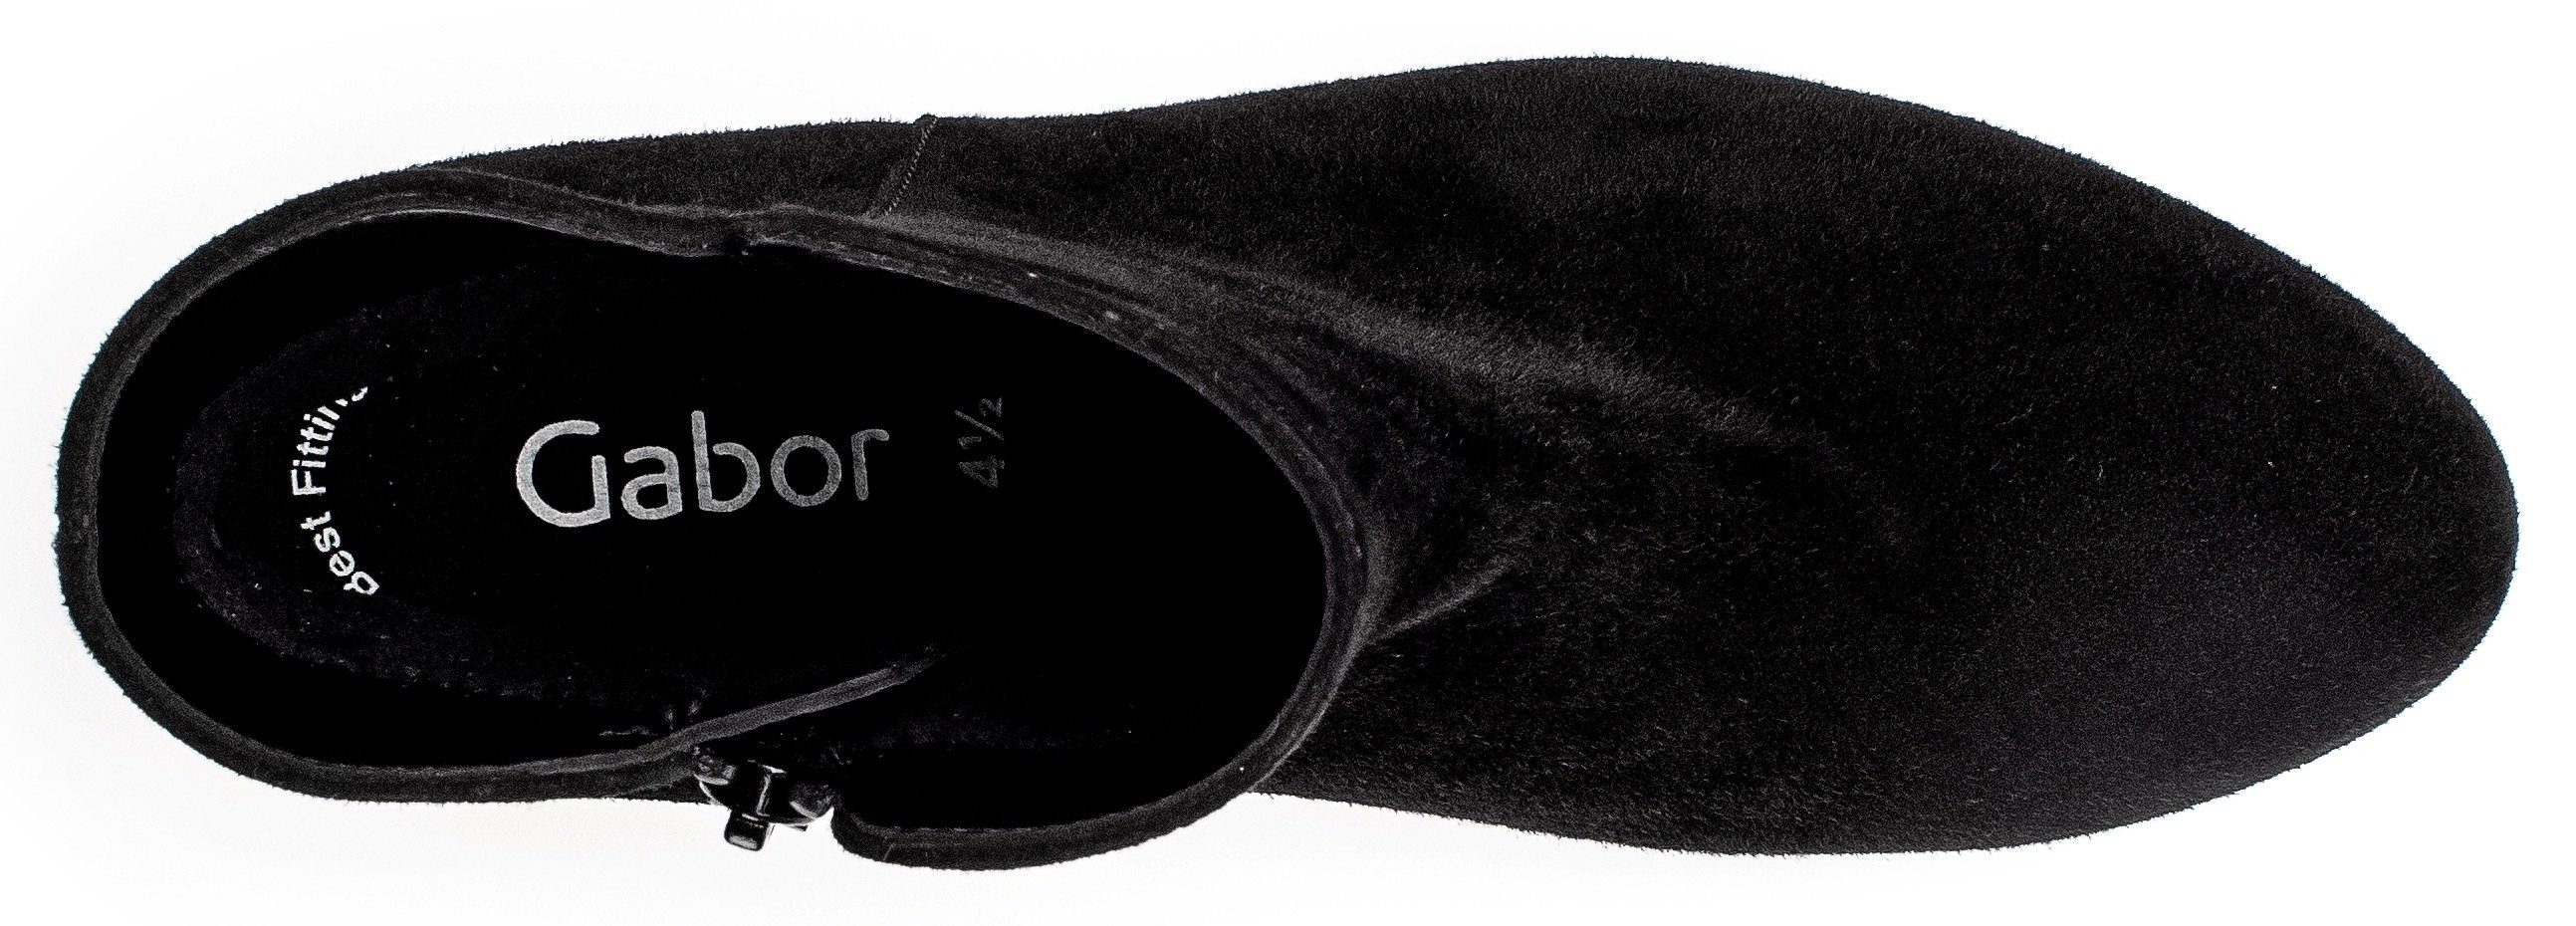 Stiefelette Gabor mit schwarz Fitting-Ausstattung Best